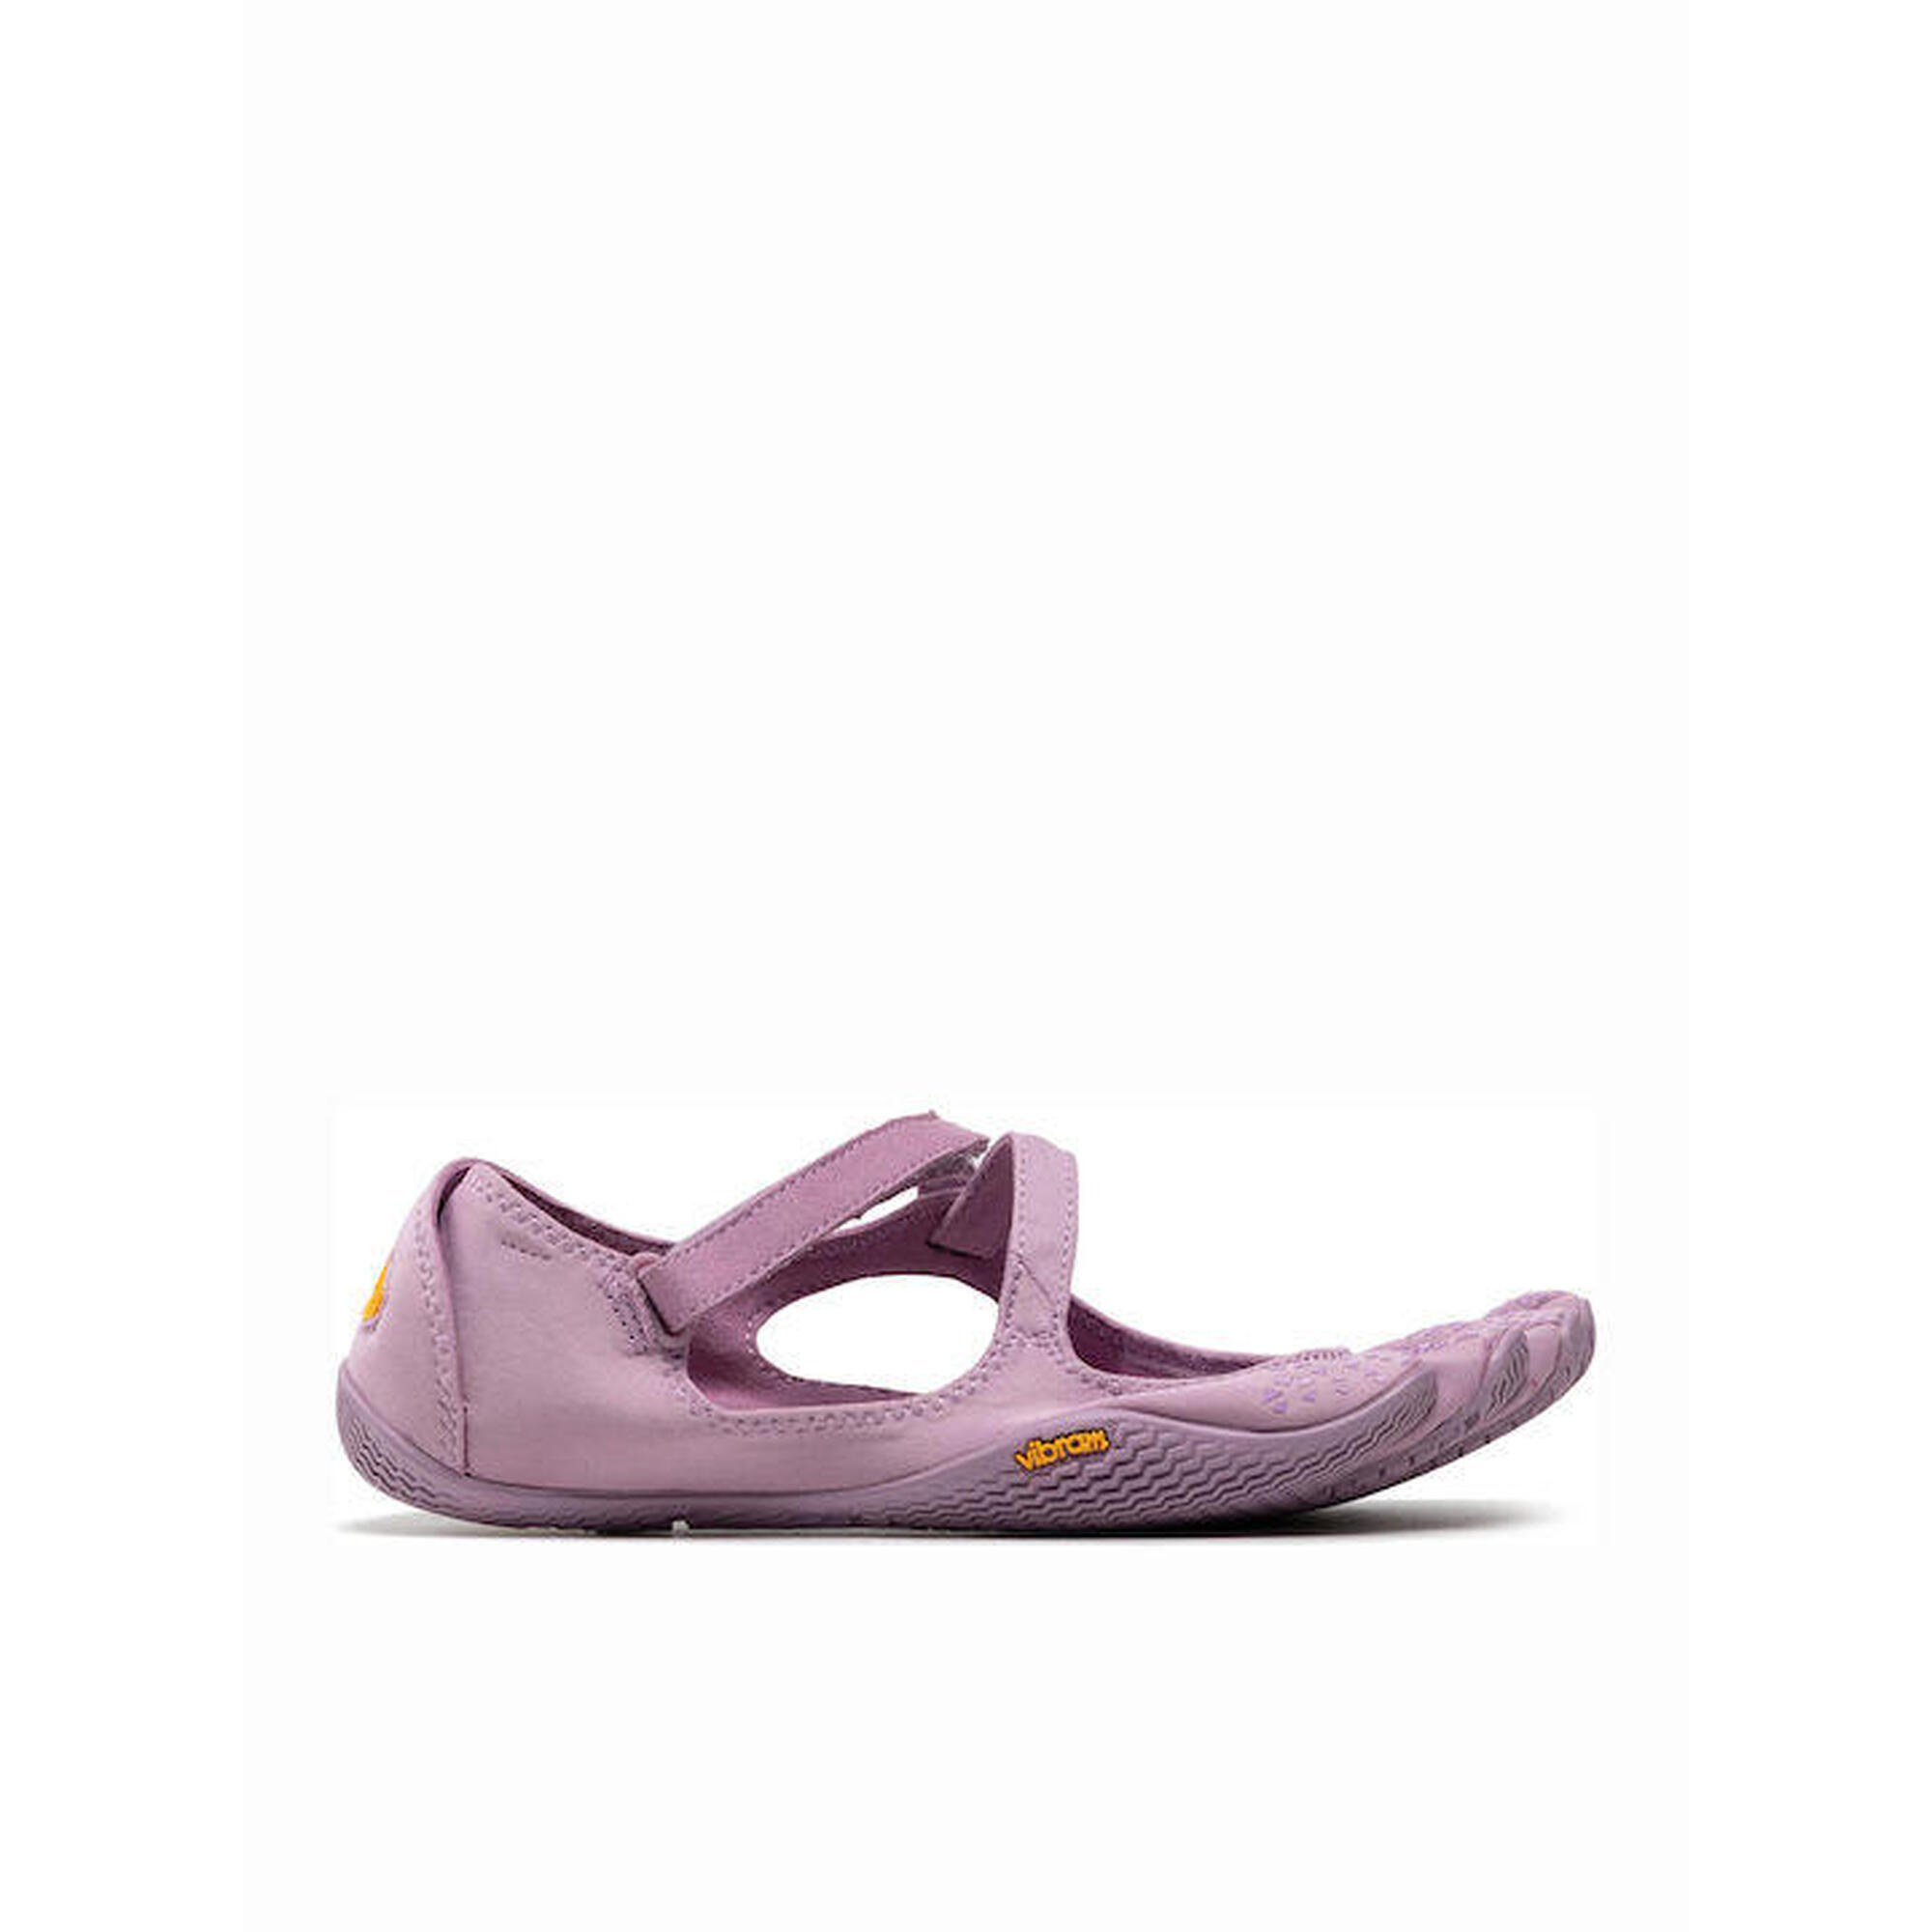 V-Soul 五指鞋 - 紫色